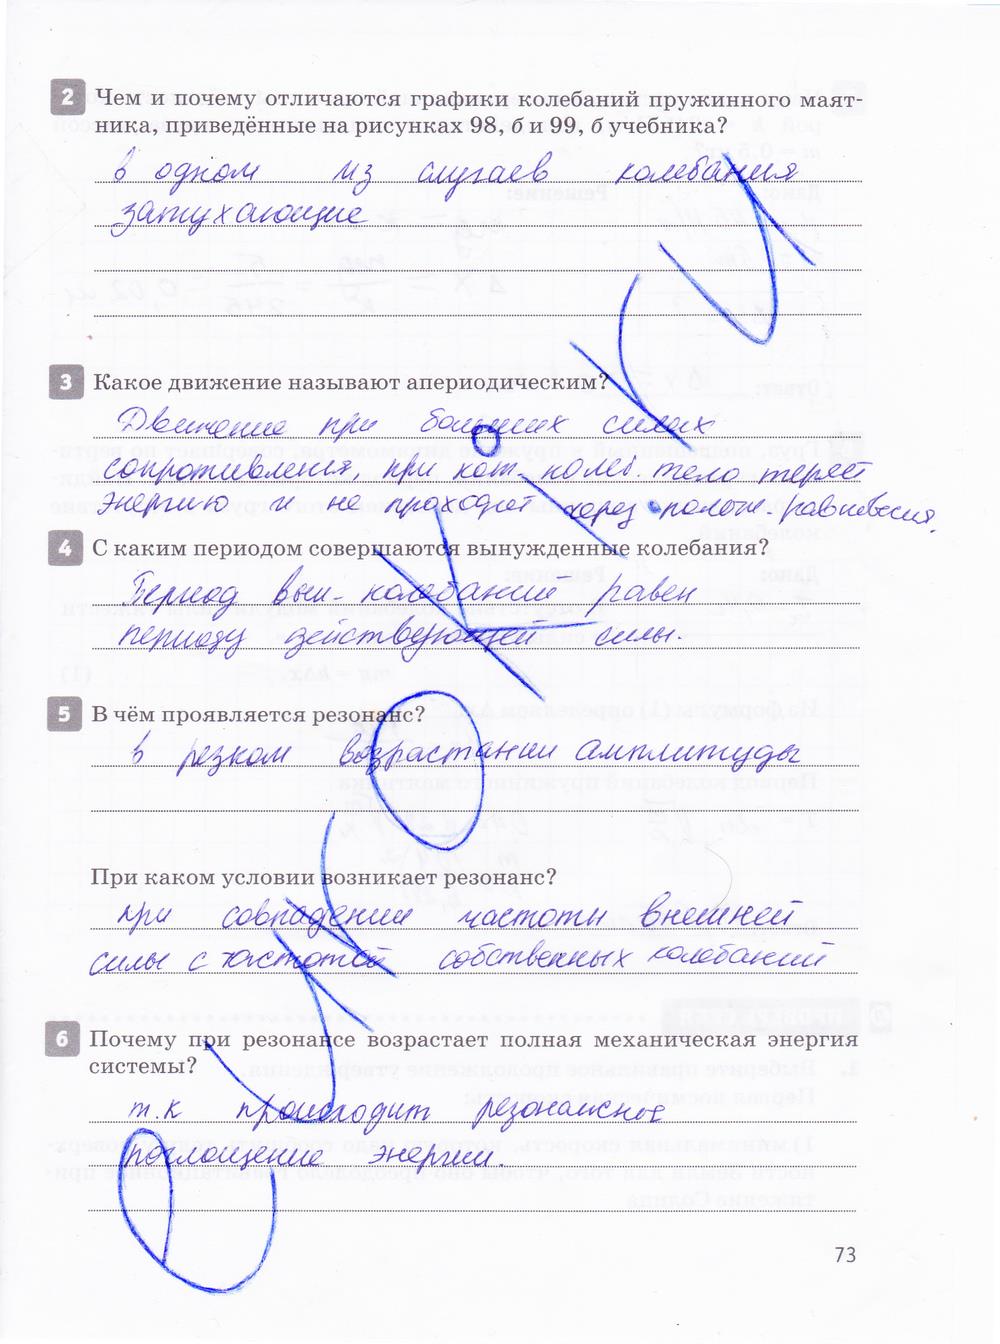 гдз 10 класс рабочая тетрадь страница 73 физика Касьянов, Дмитриева